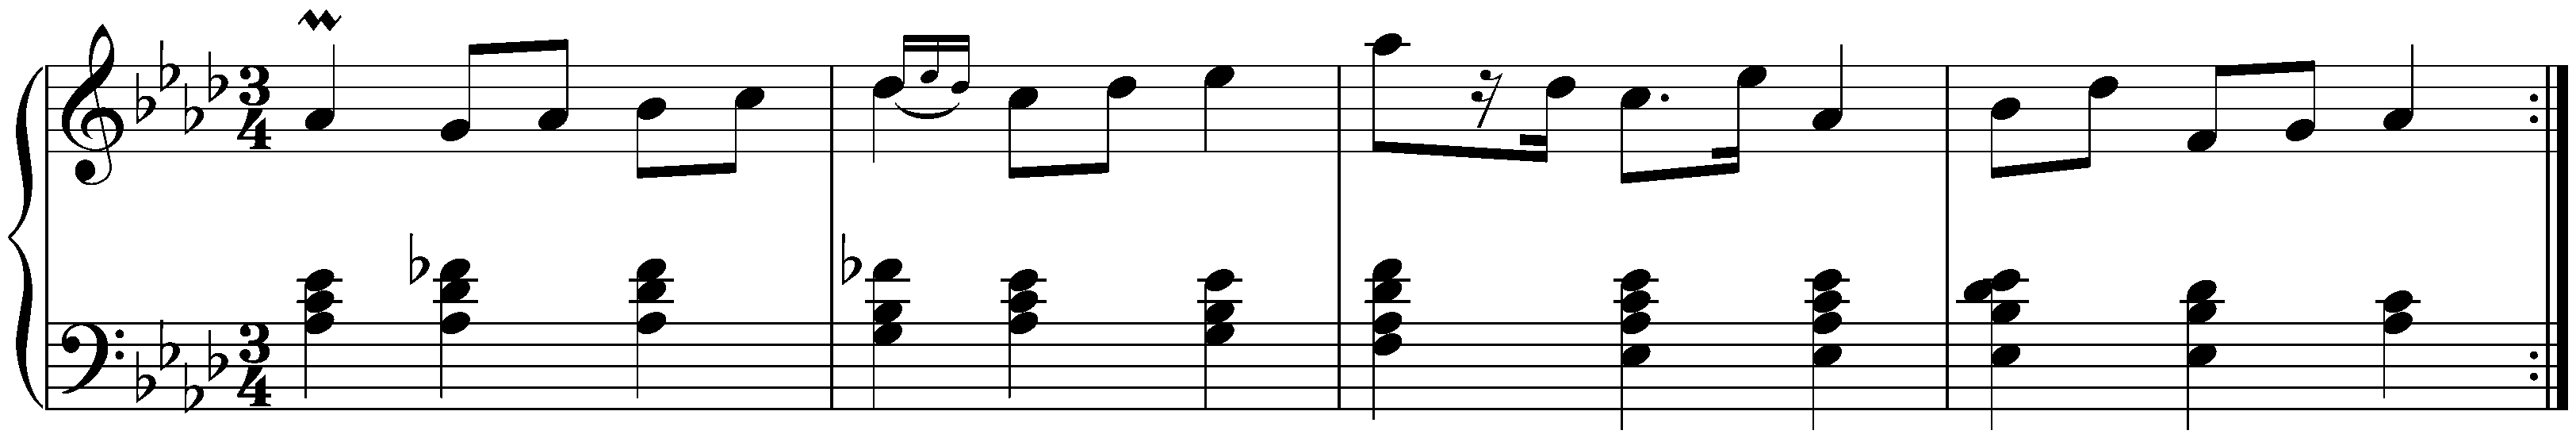 Five Mazurkas, op. 7; 4. A-flat major (first version)